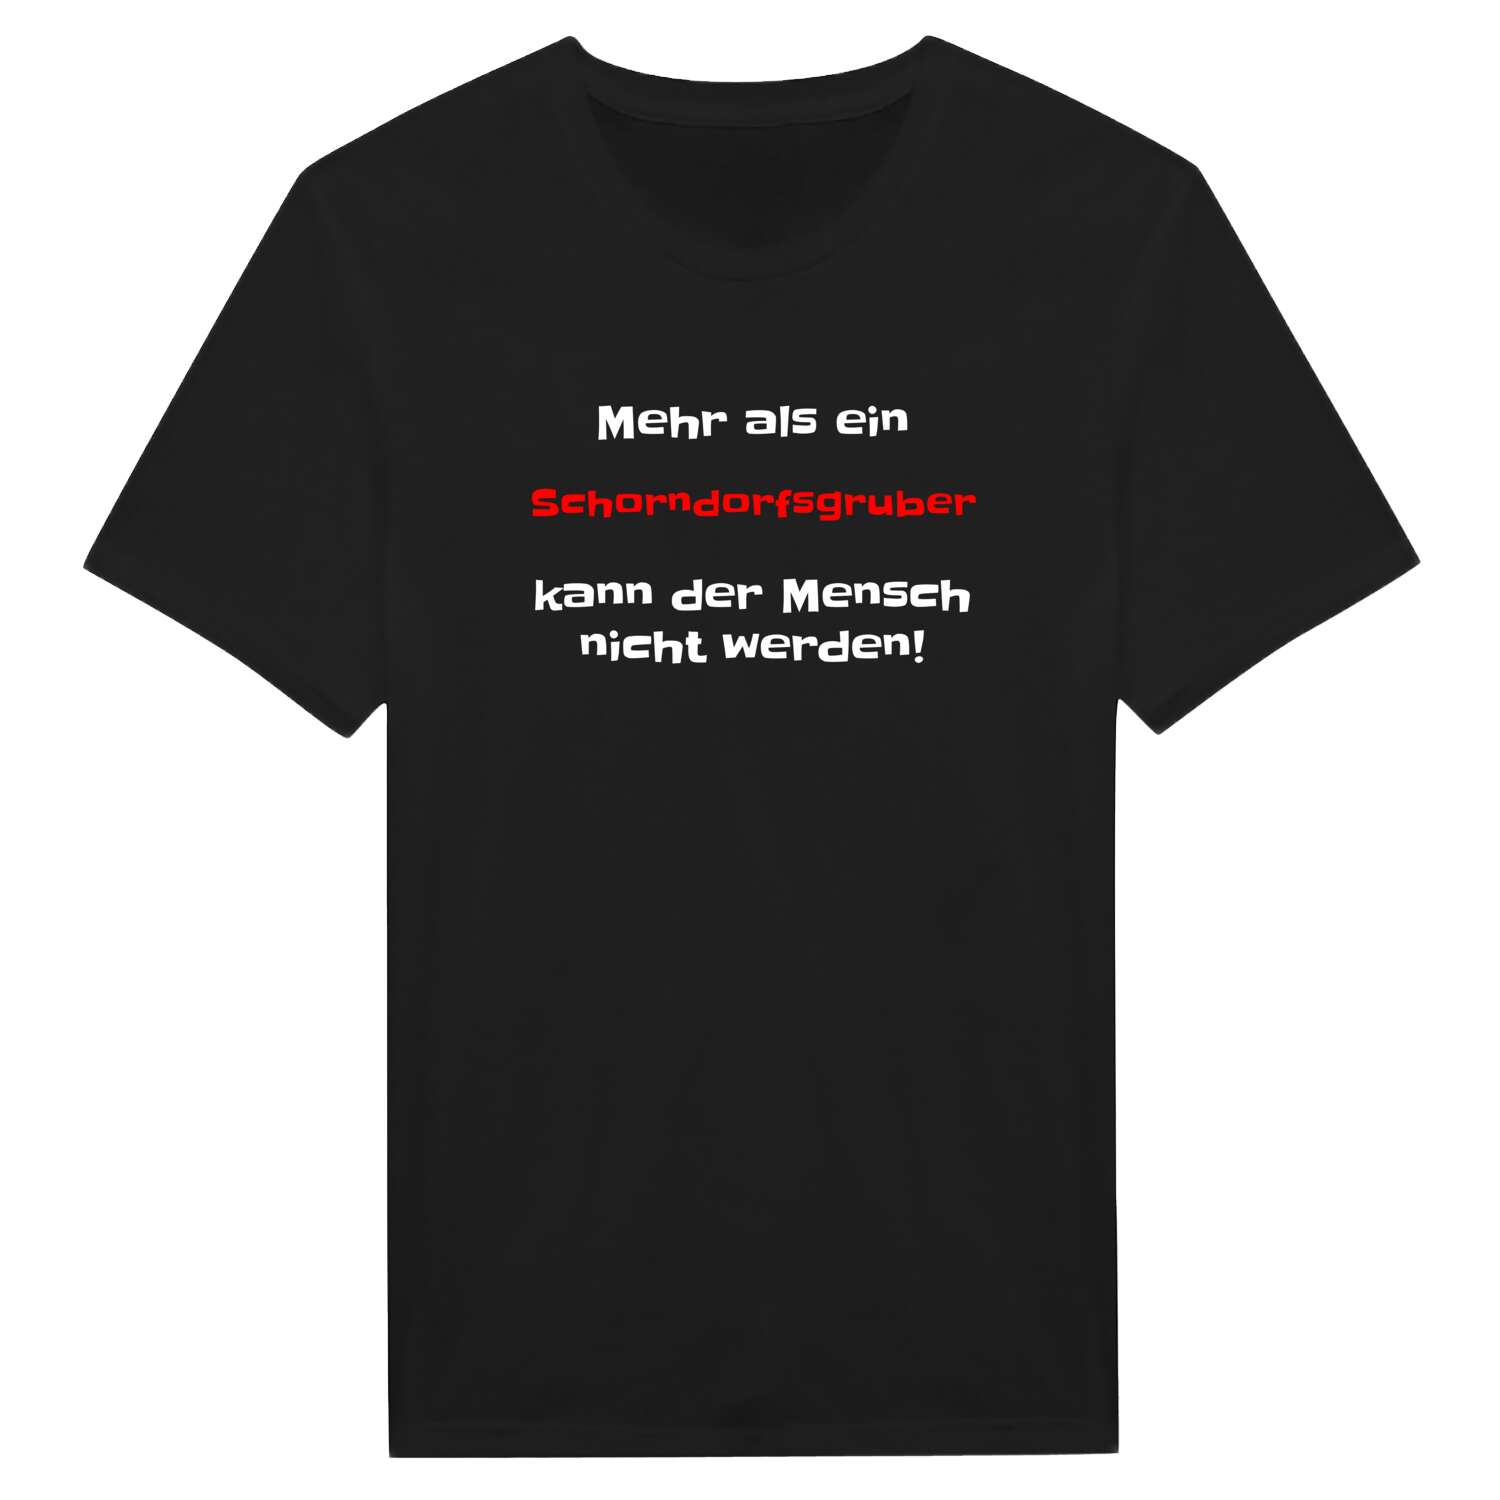 Schorndorfsgrub T-Shirt »Mehr als ein«